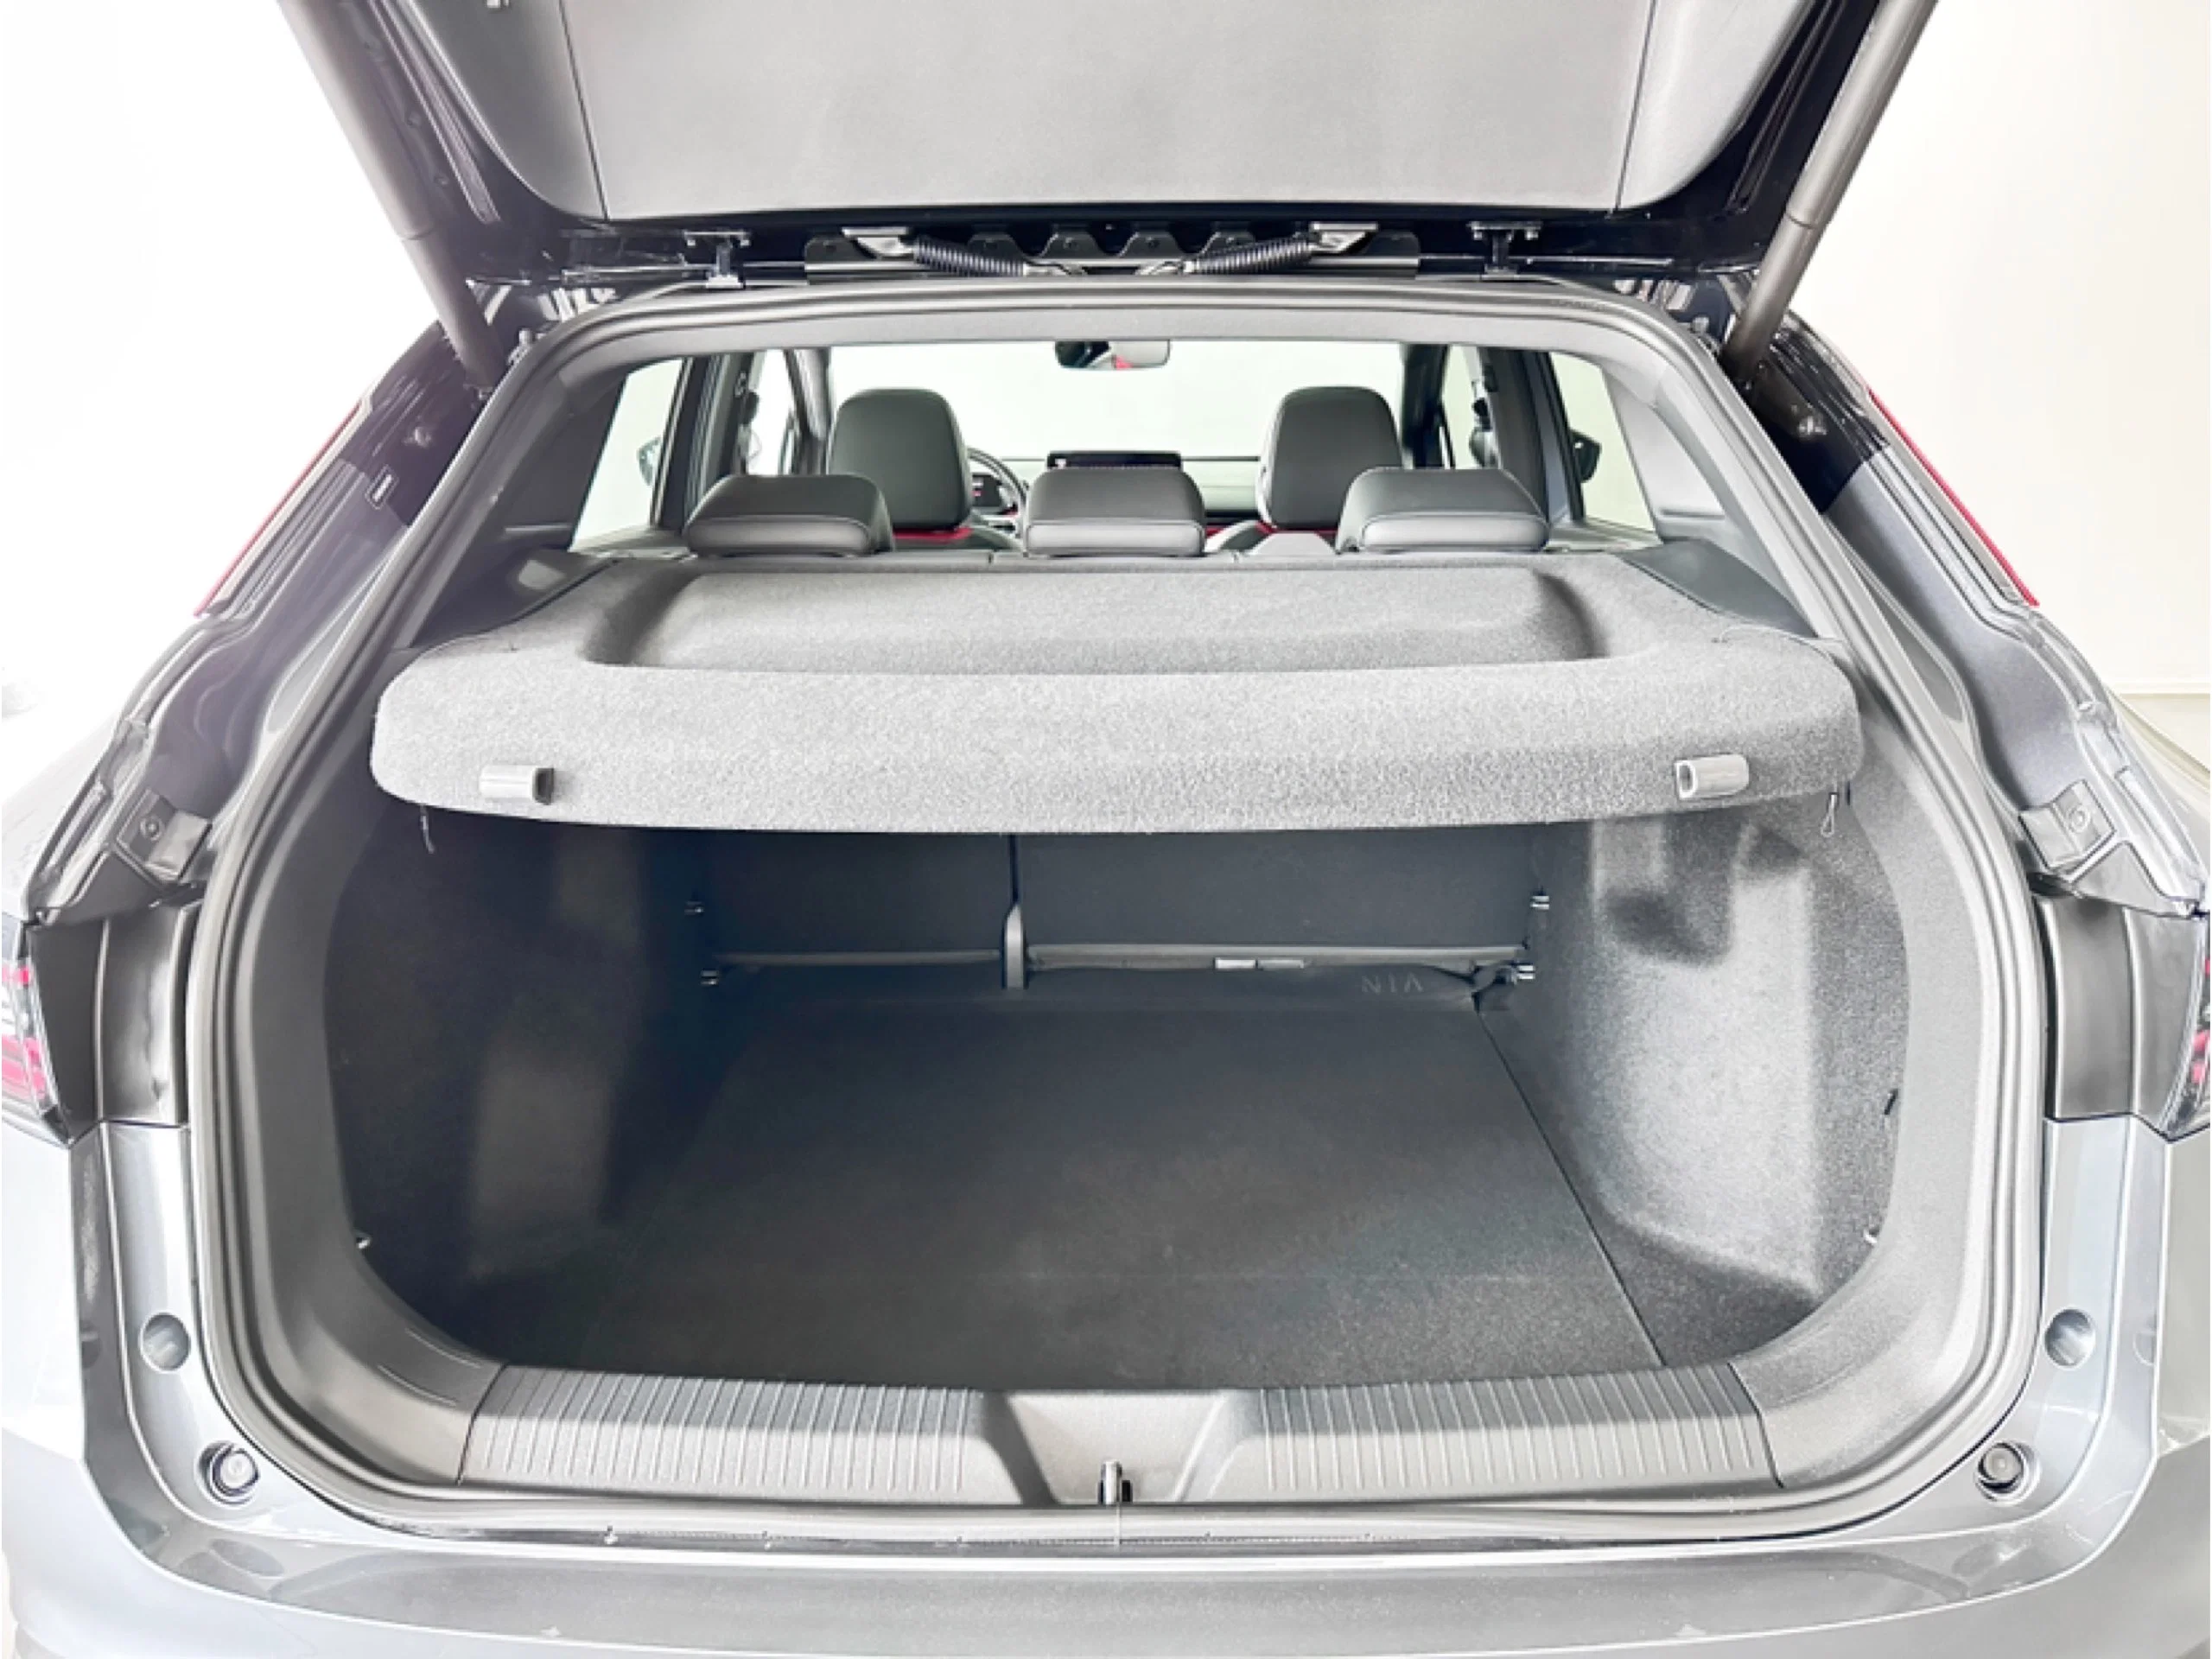 VW ID4 X PRO 2021-2023 سيارة كهربائية مستعملة حقيقية بقيادة اليد اليسرى سيارة دفع رباعي